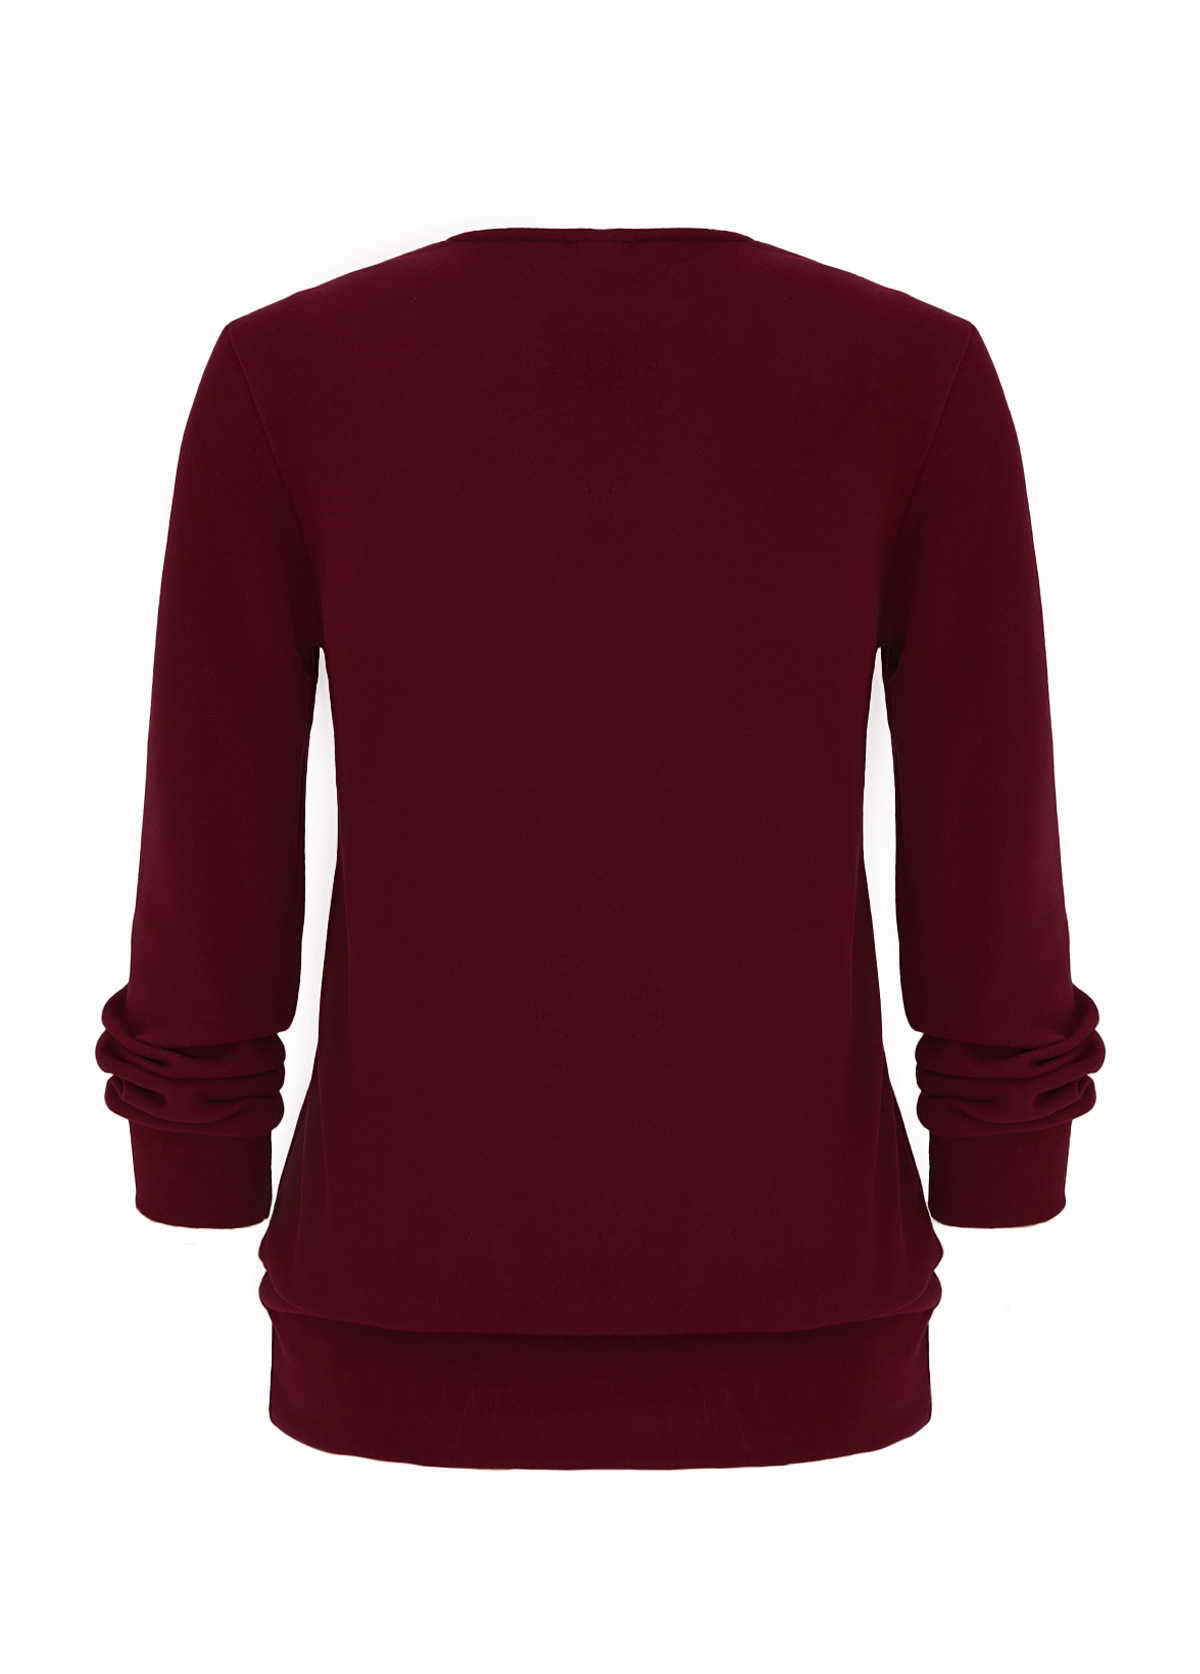 Wine Red Fake 2in1 Plaid Long Sleeve Sweatshirt